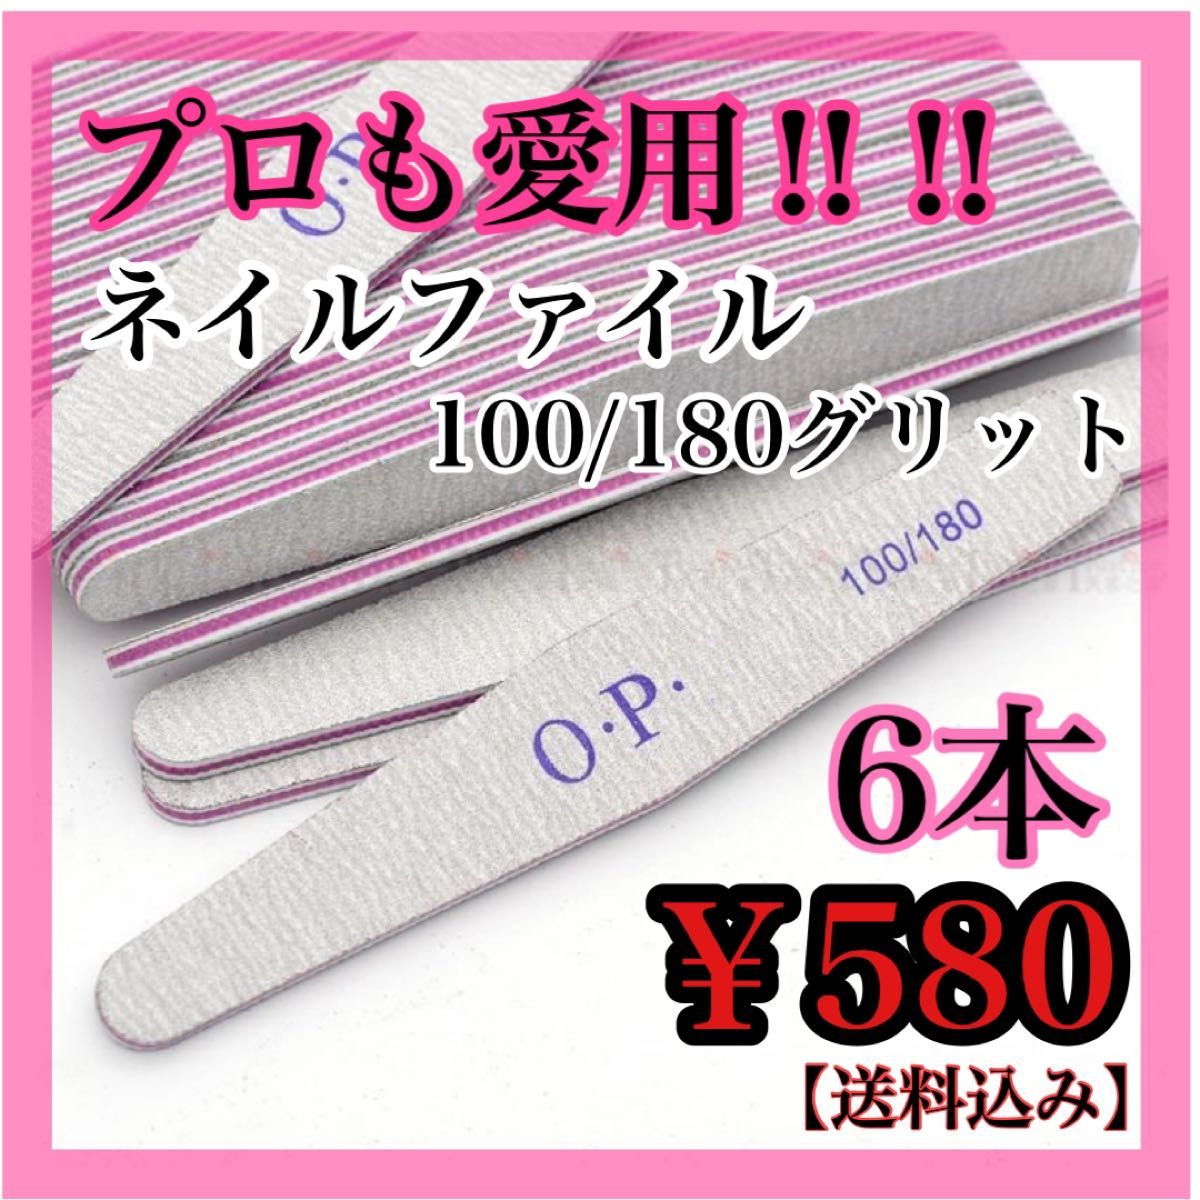 【6本】ネイル ファイル 爪やすり OPI 100 180 ひし形 サンディング